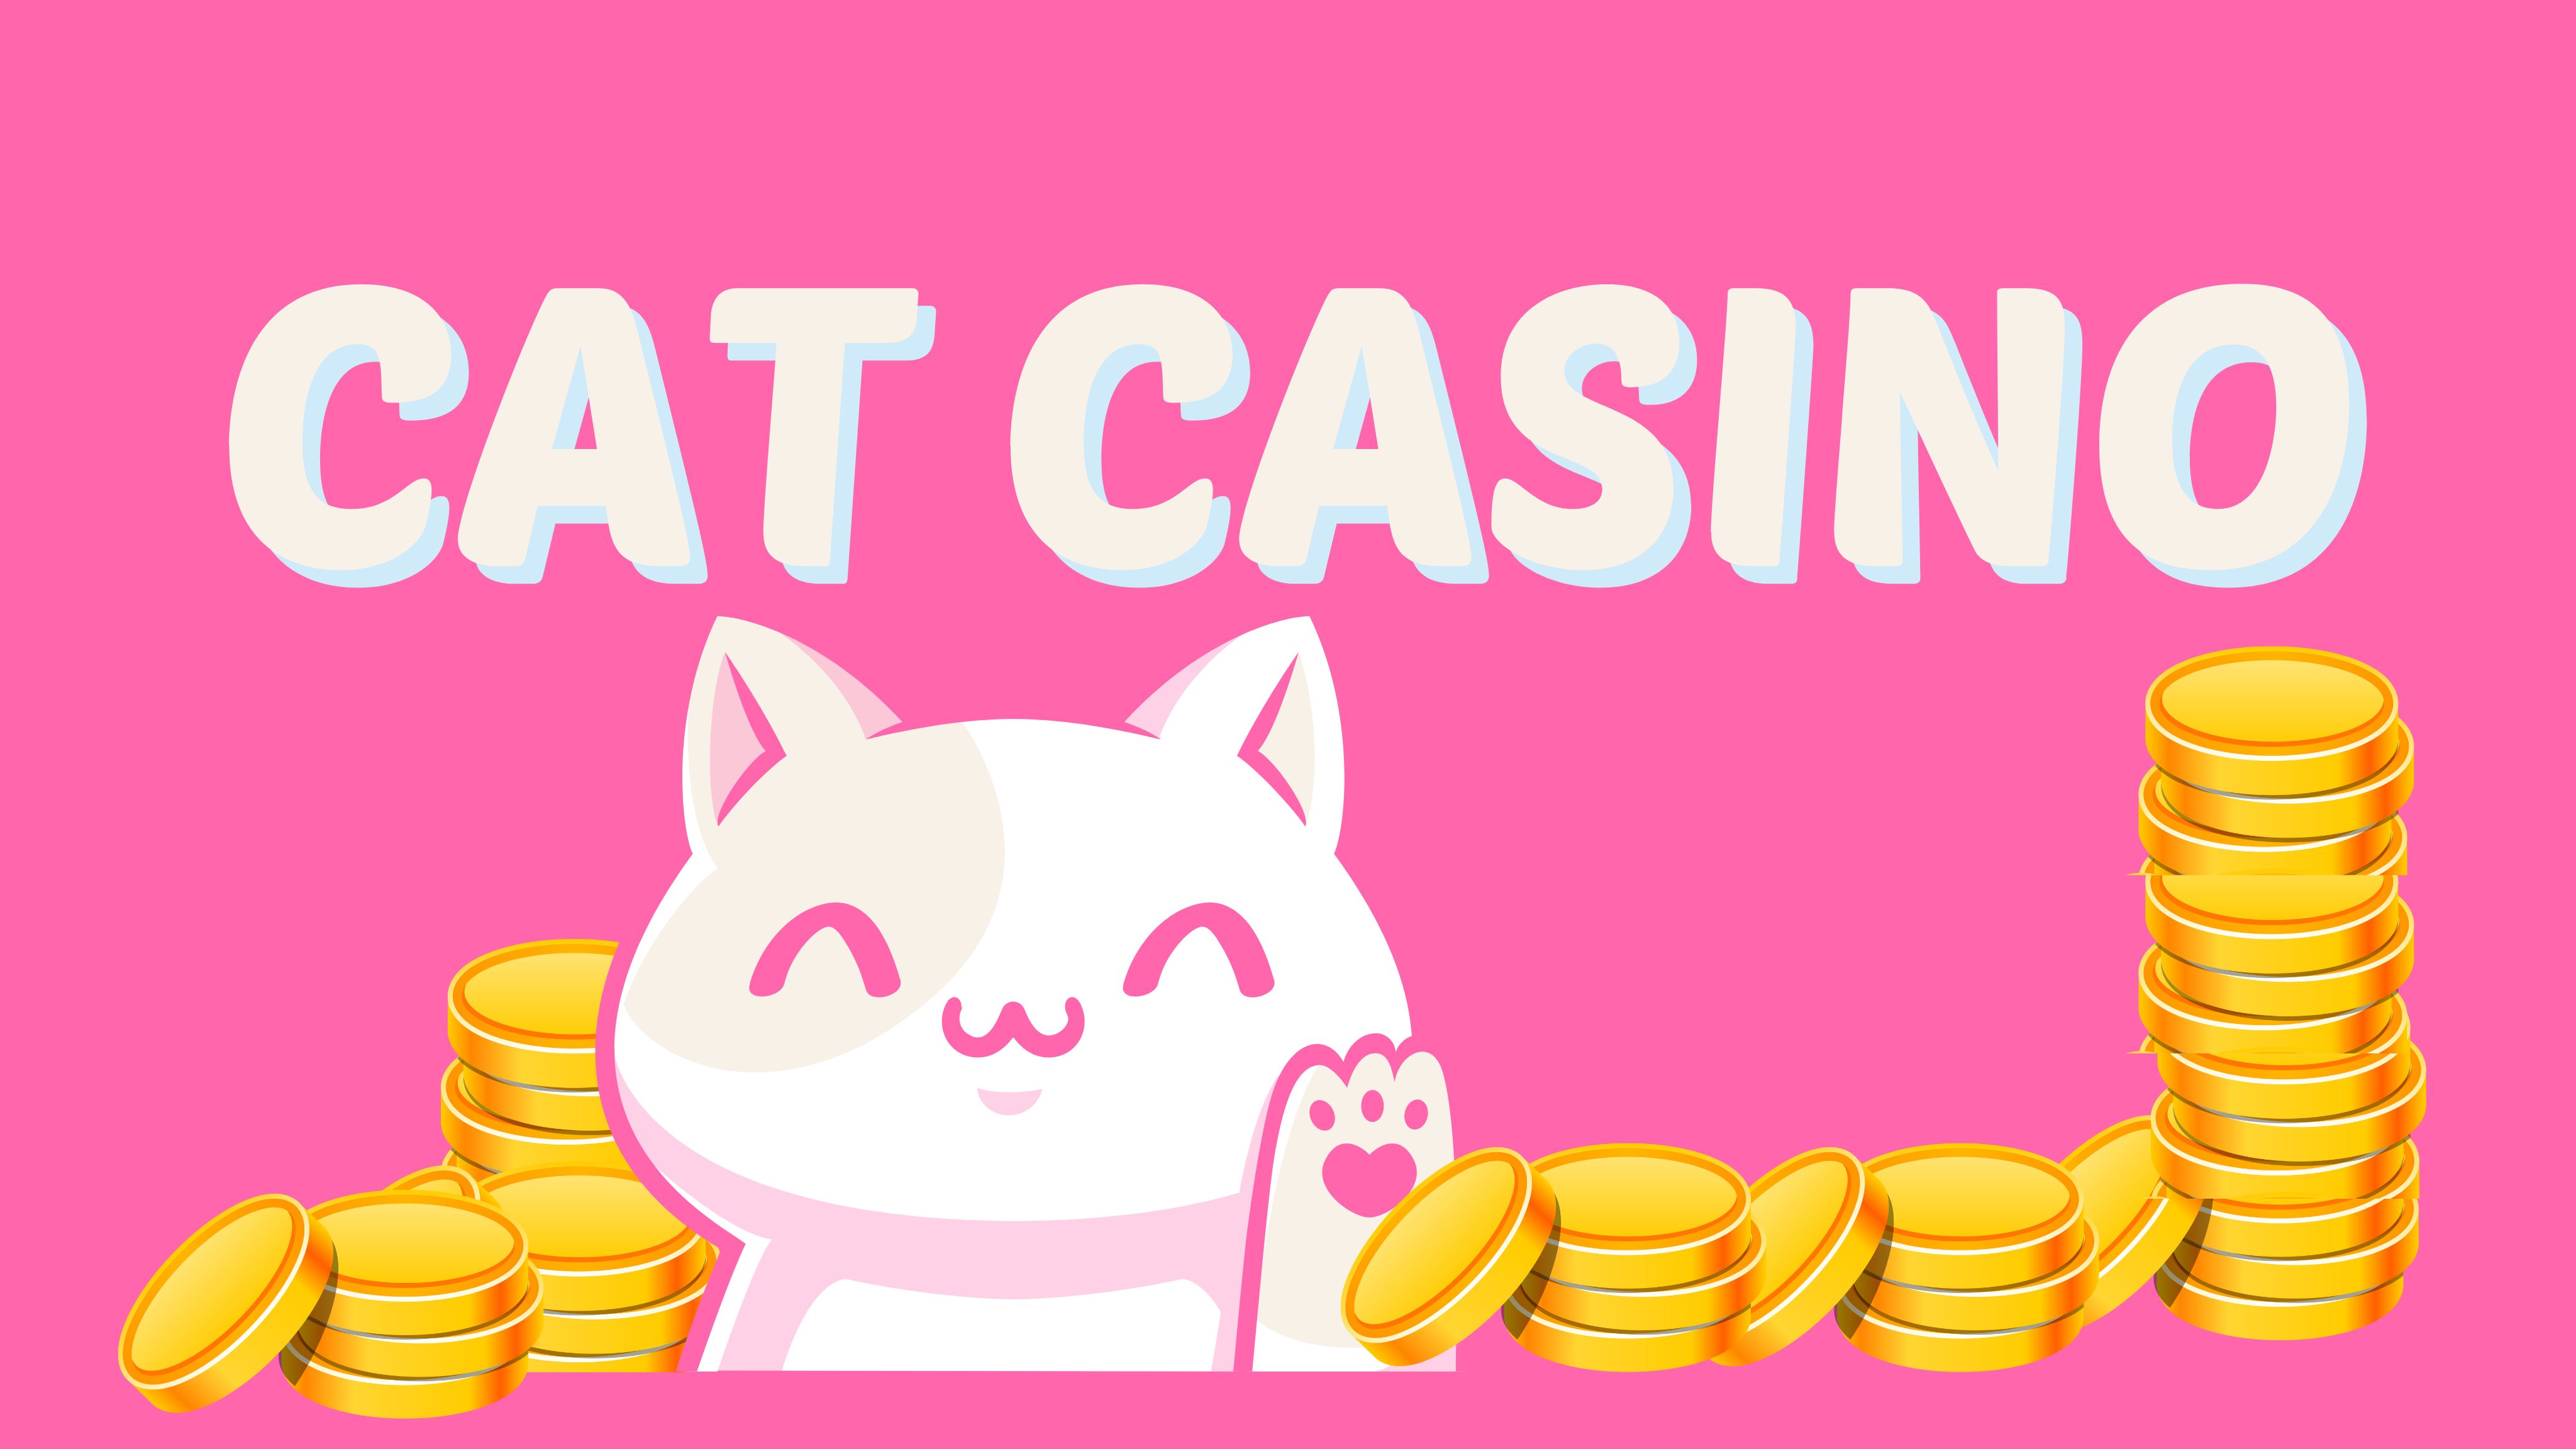 Cat casino cat casino ihr buzz. Cat Casino.